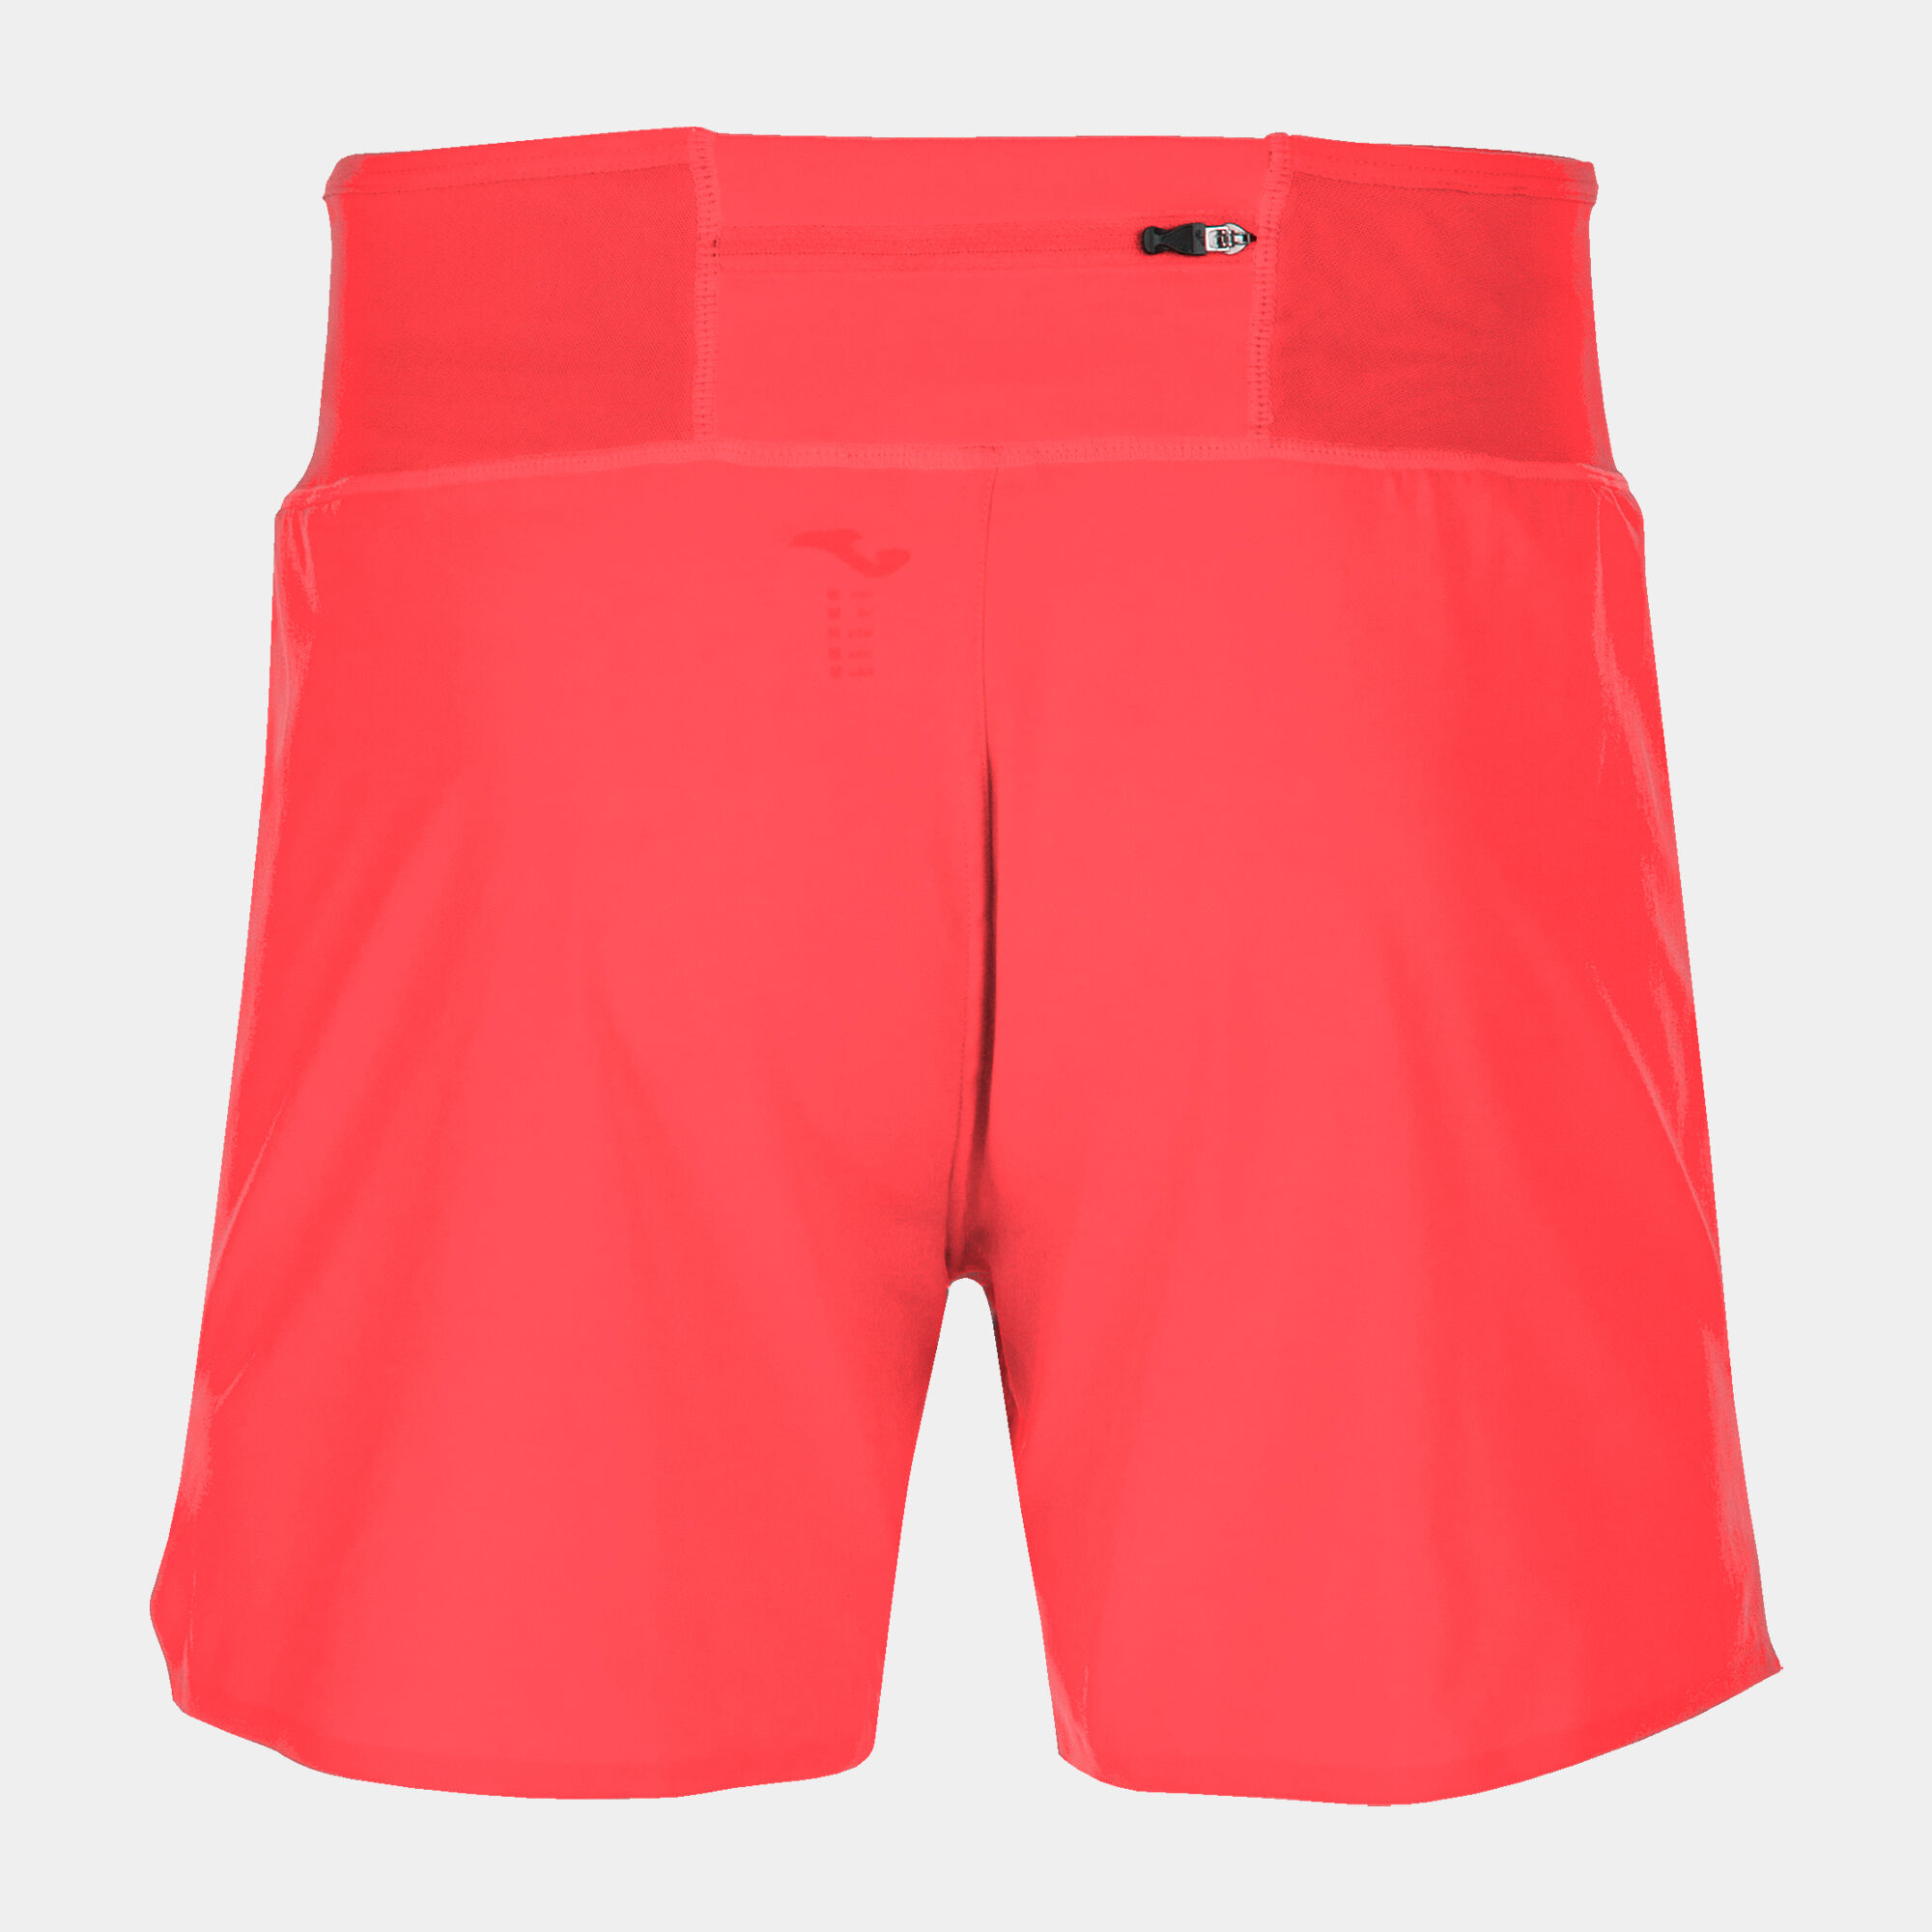 Pantaloncini uomo R-Combi corallo fluorescente